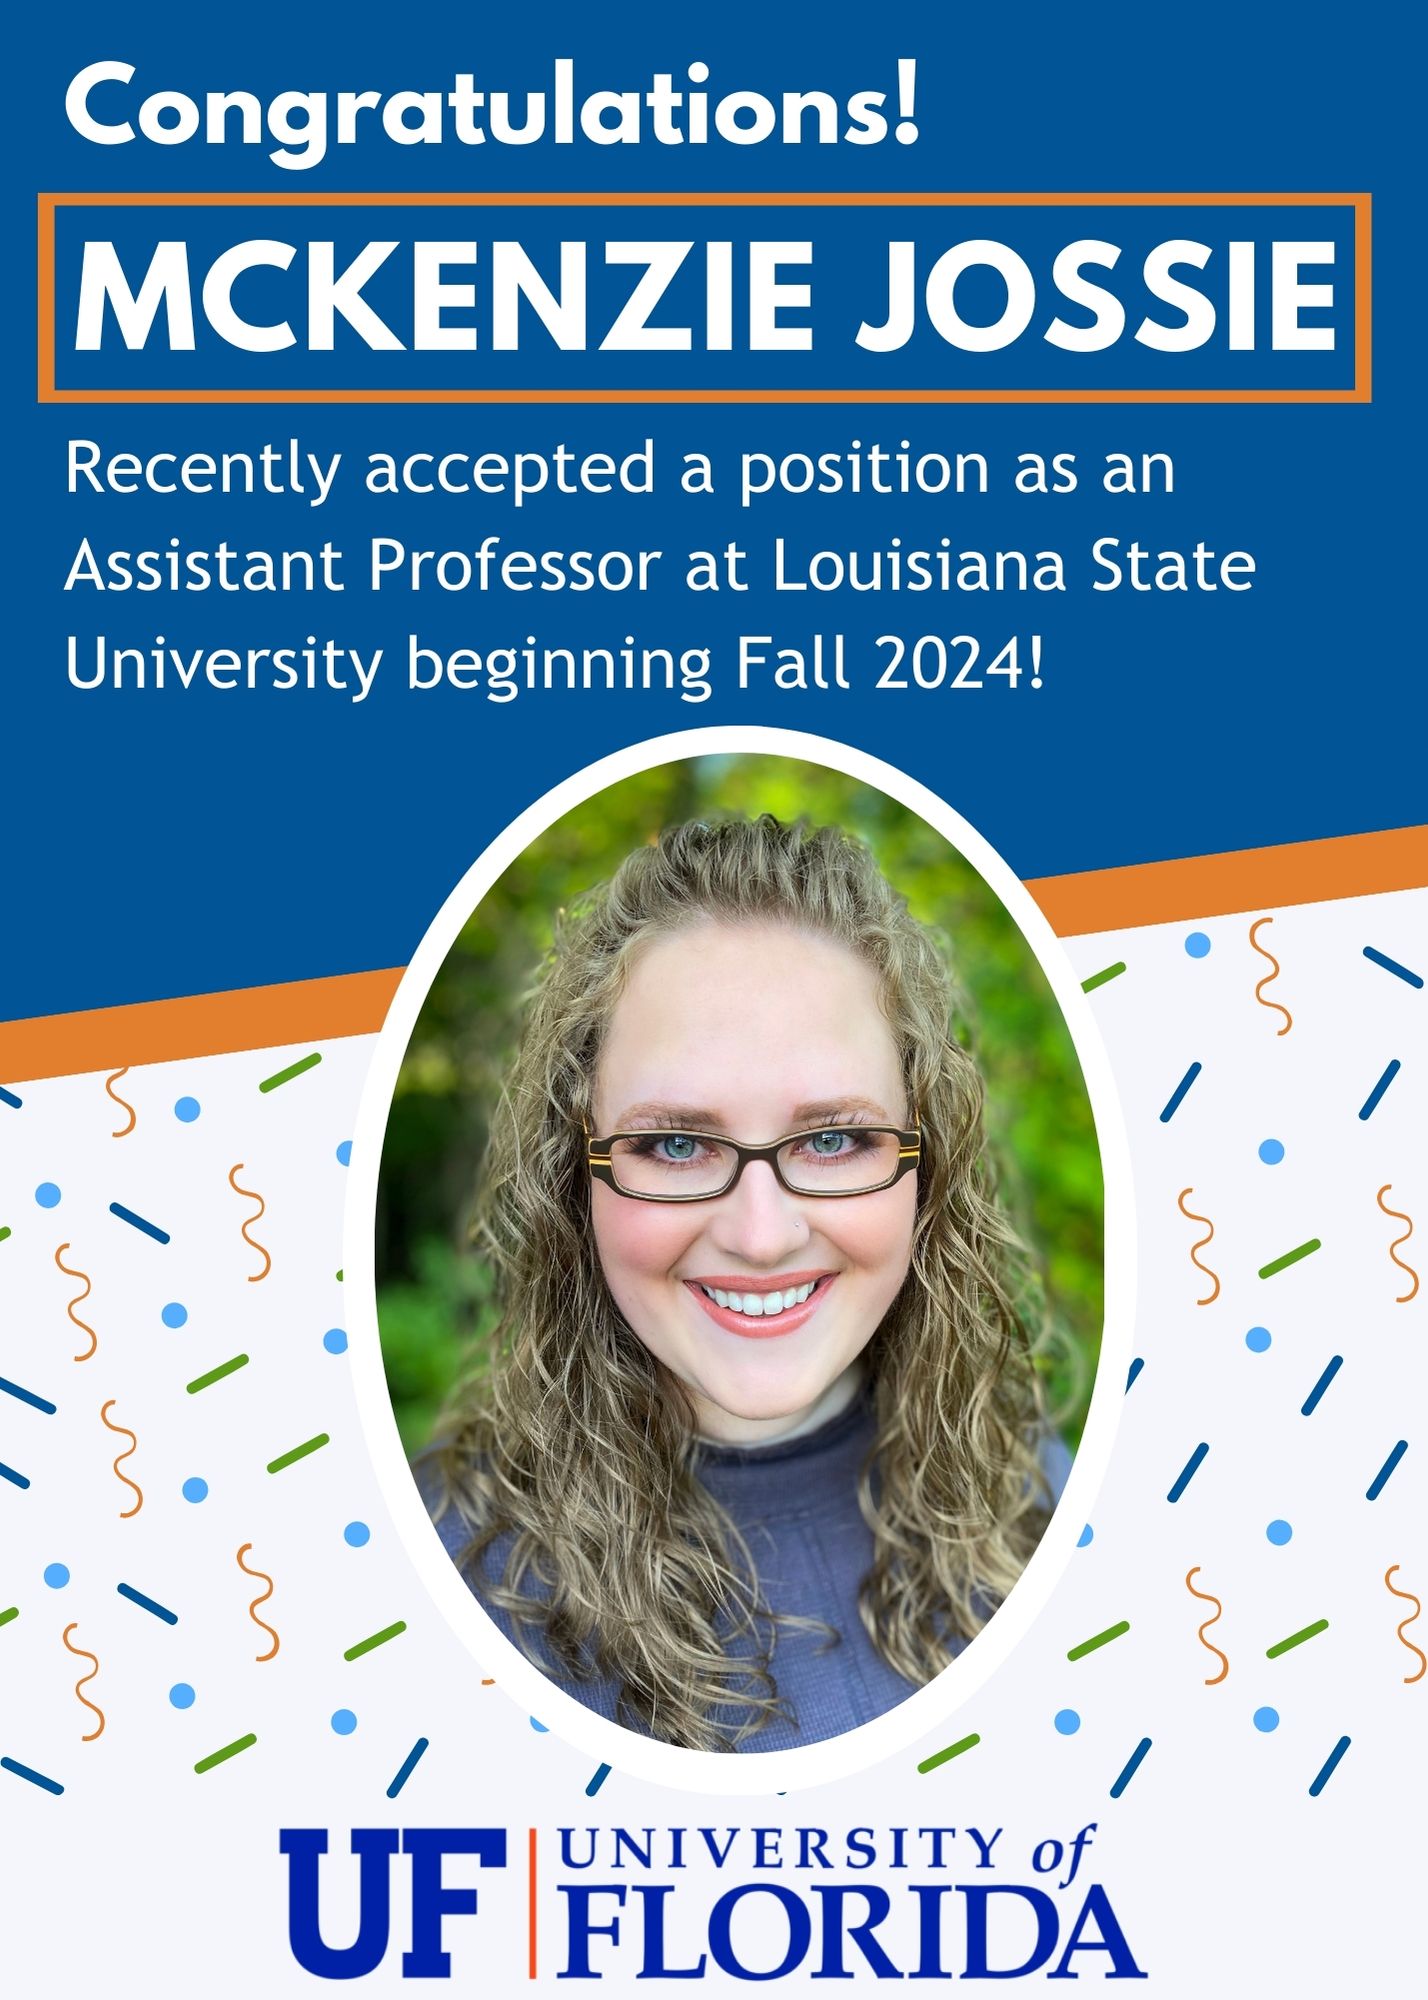 Criminology & Law Doctoral Candidate McKenzie Jossie Hired at LSU